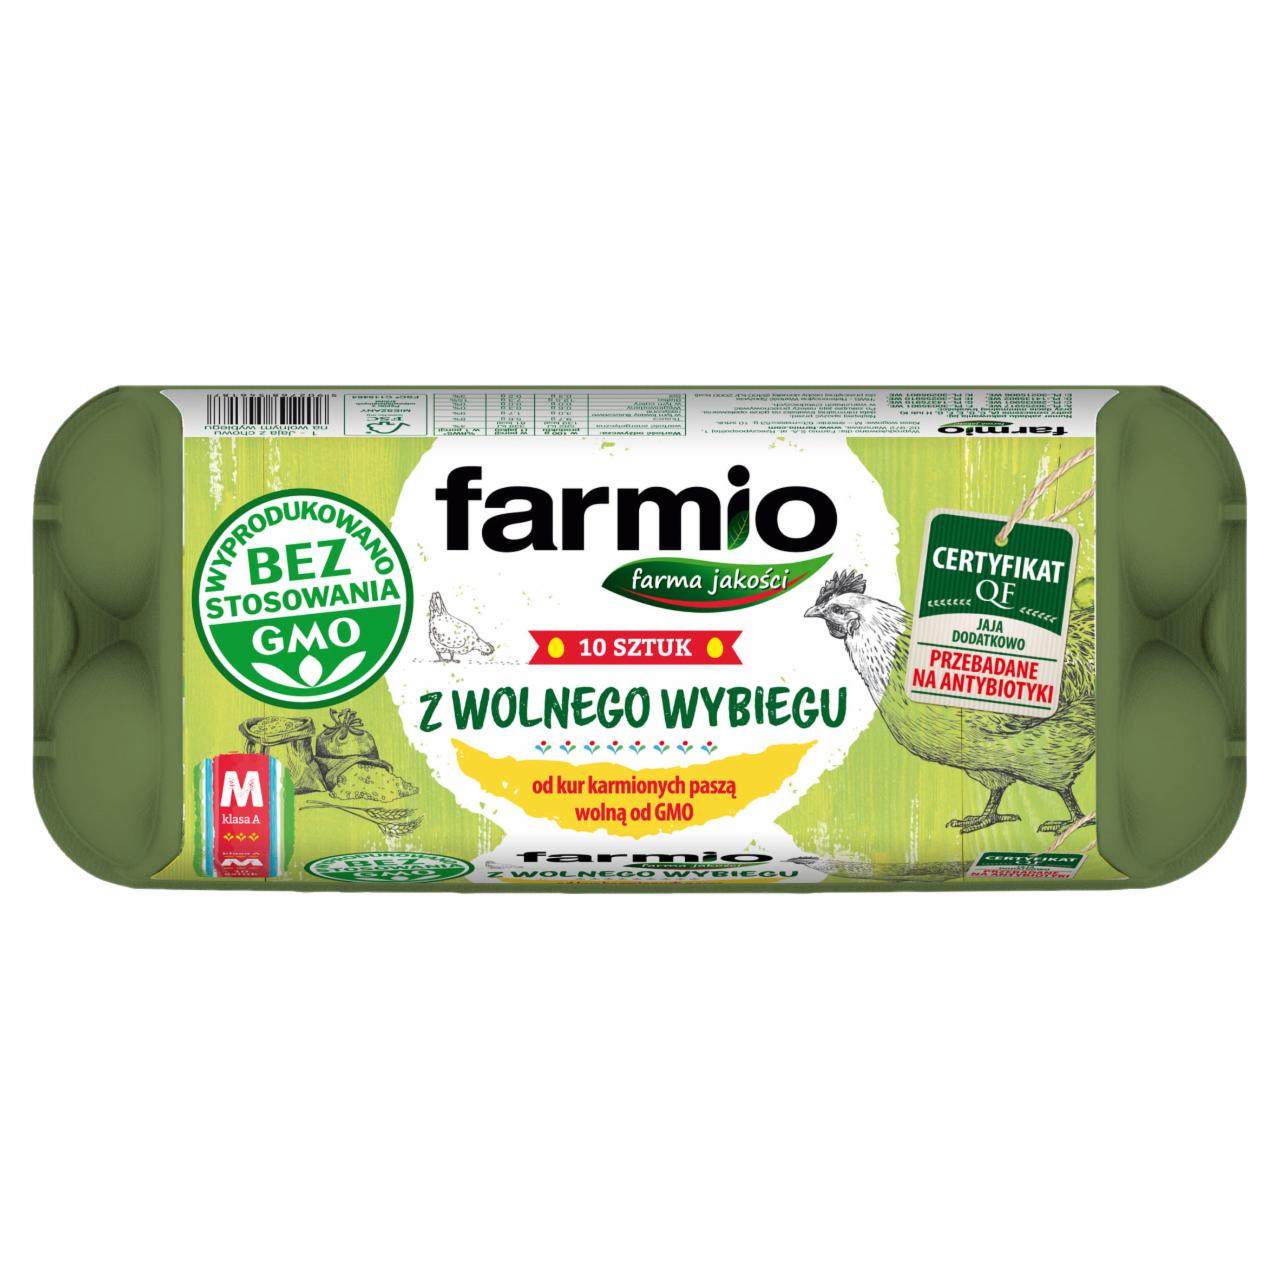 Zdjęcia - Farmio Jaja z wolnego wybiegu od kur karmionych paszą wolną od GMO M 10 sztuk